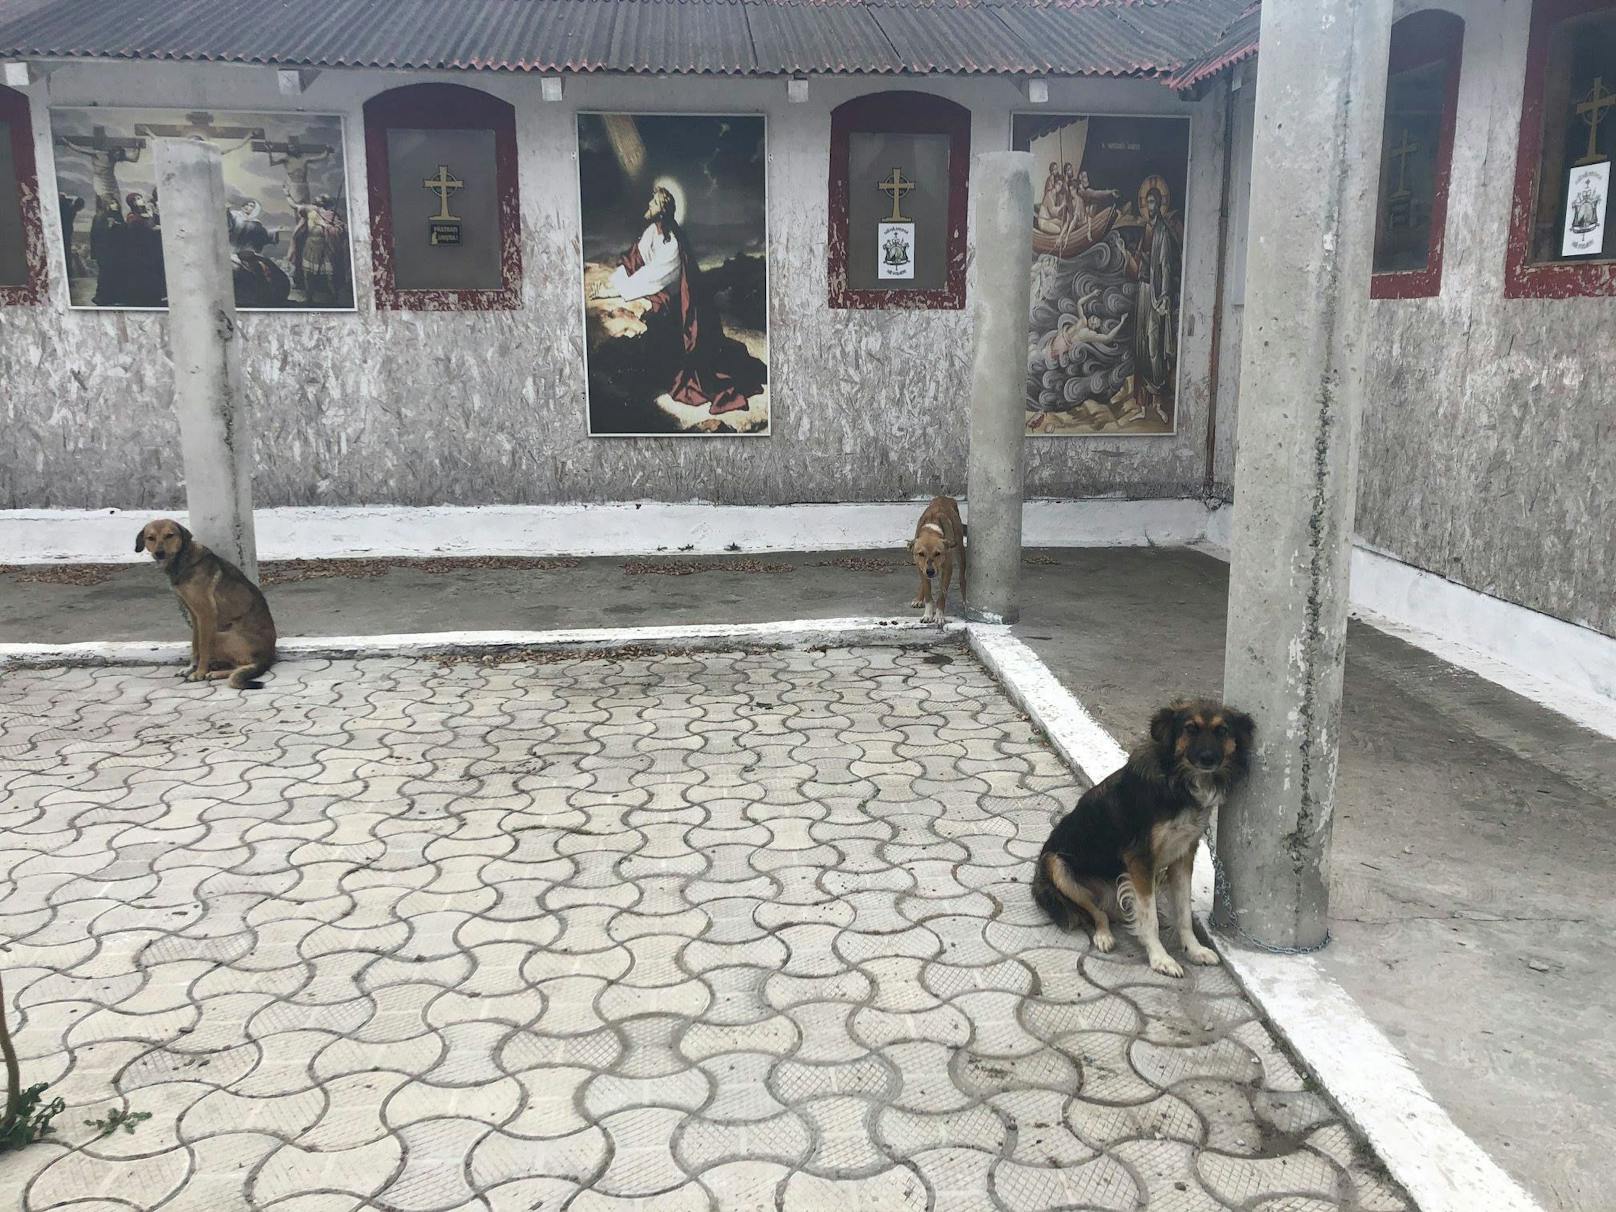 Da das Tierheim zum Zeitpunkt des Besuches brechend voll war, konnte man zunächst "nur" 6 Hunde mitnehmen - und erst drei Tage später die übrigen 11 Hunde nachholen. 